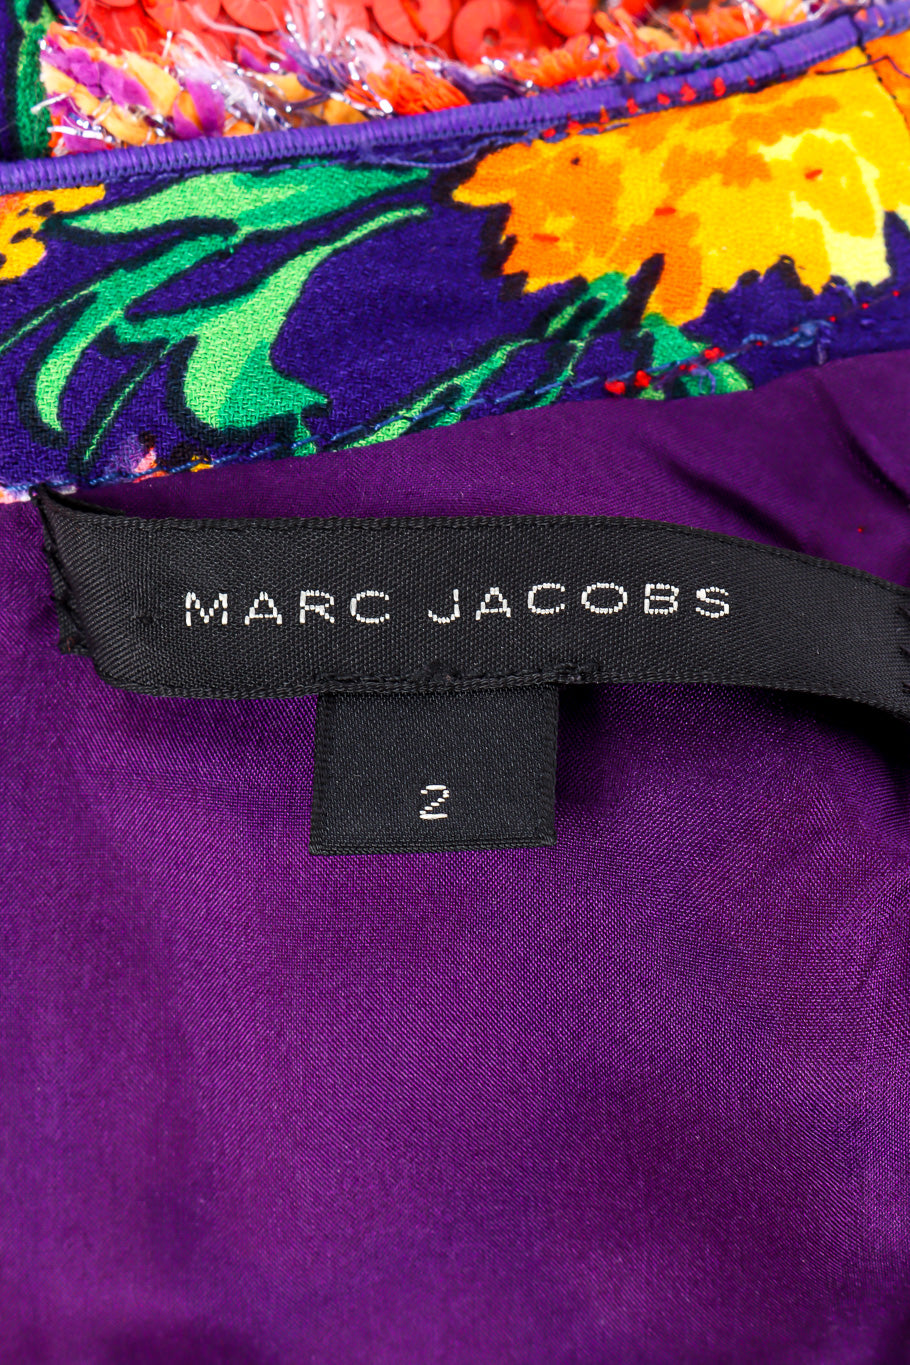 Floral lamé knit sequin dress by Marc Jacobs flat lay label @recessla